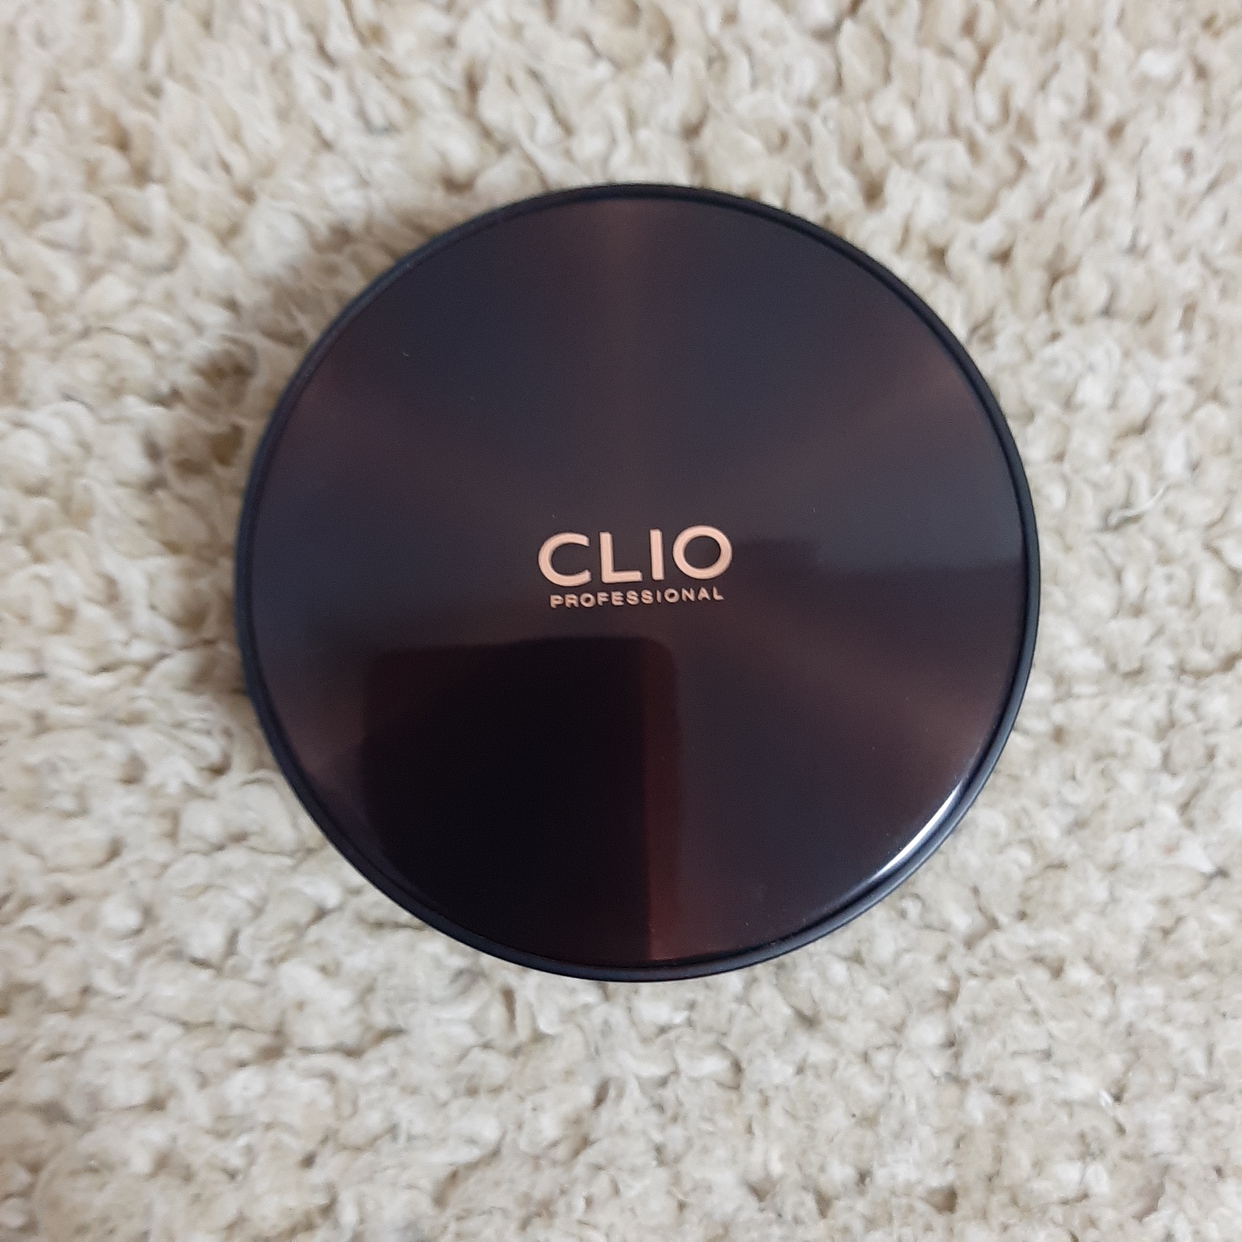 CLIO(クリオ) キル カバー コンシール クッションの良い点・メリットに関するさおらーさんの口コミ画像1